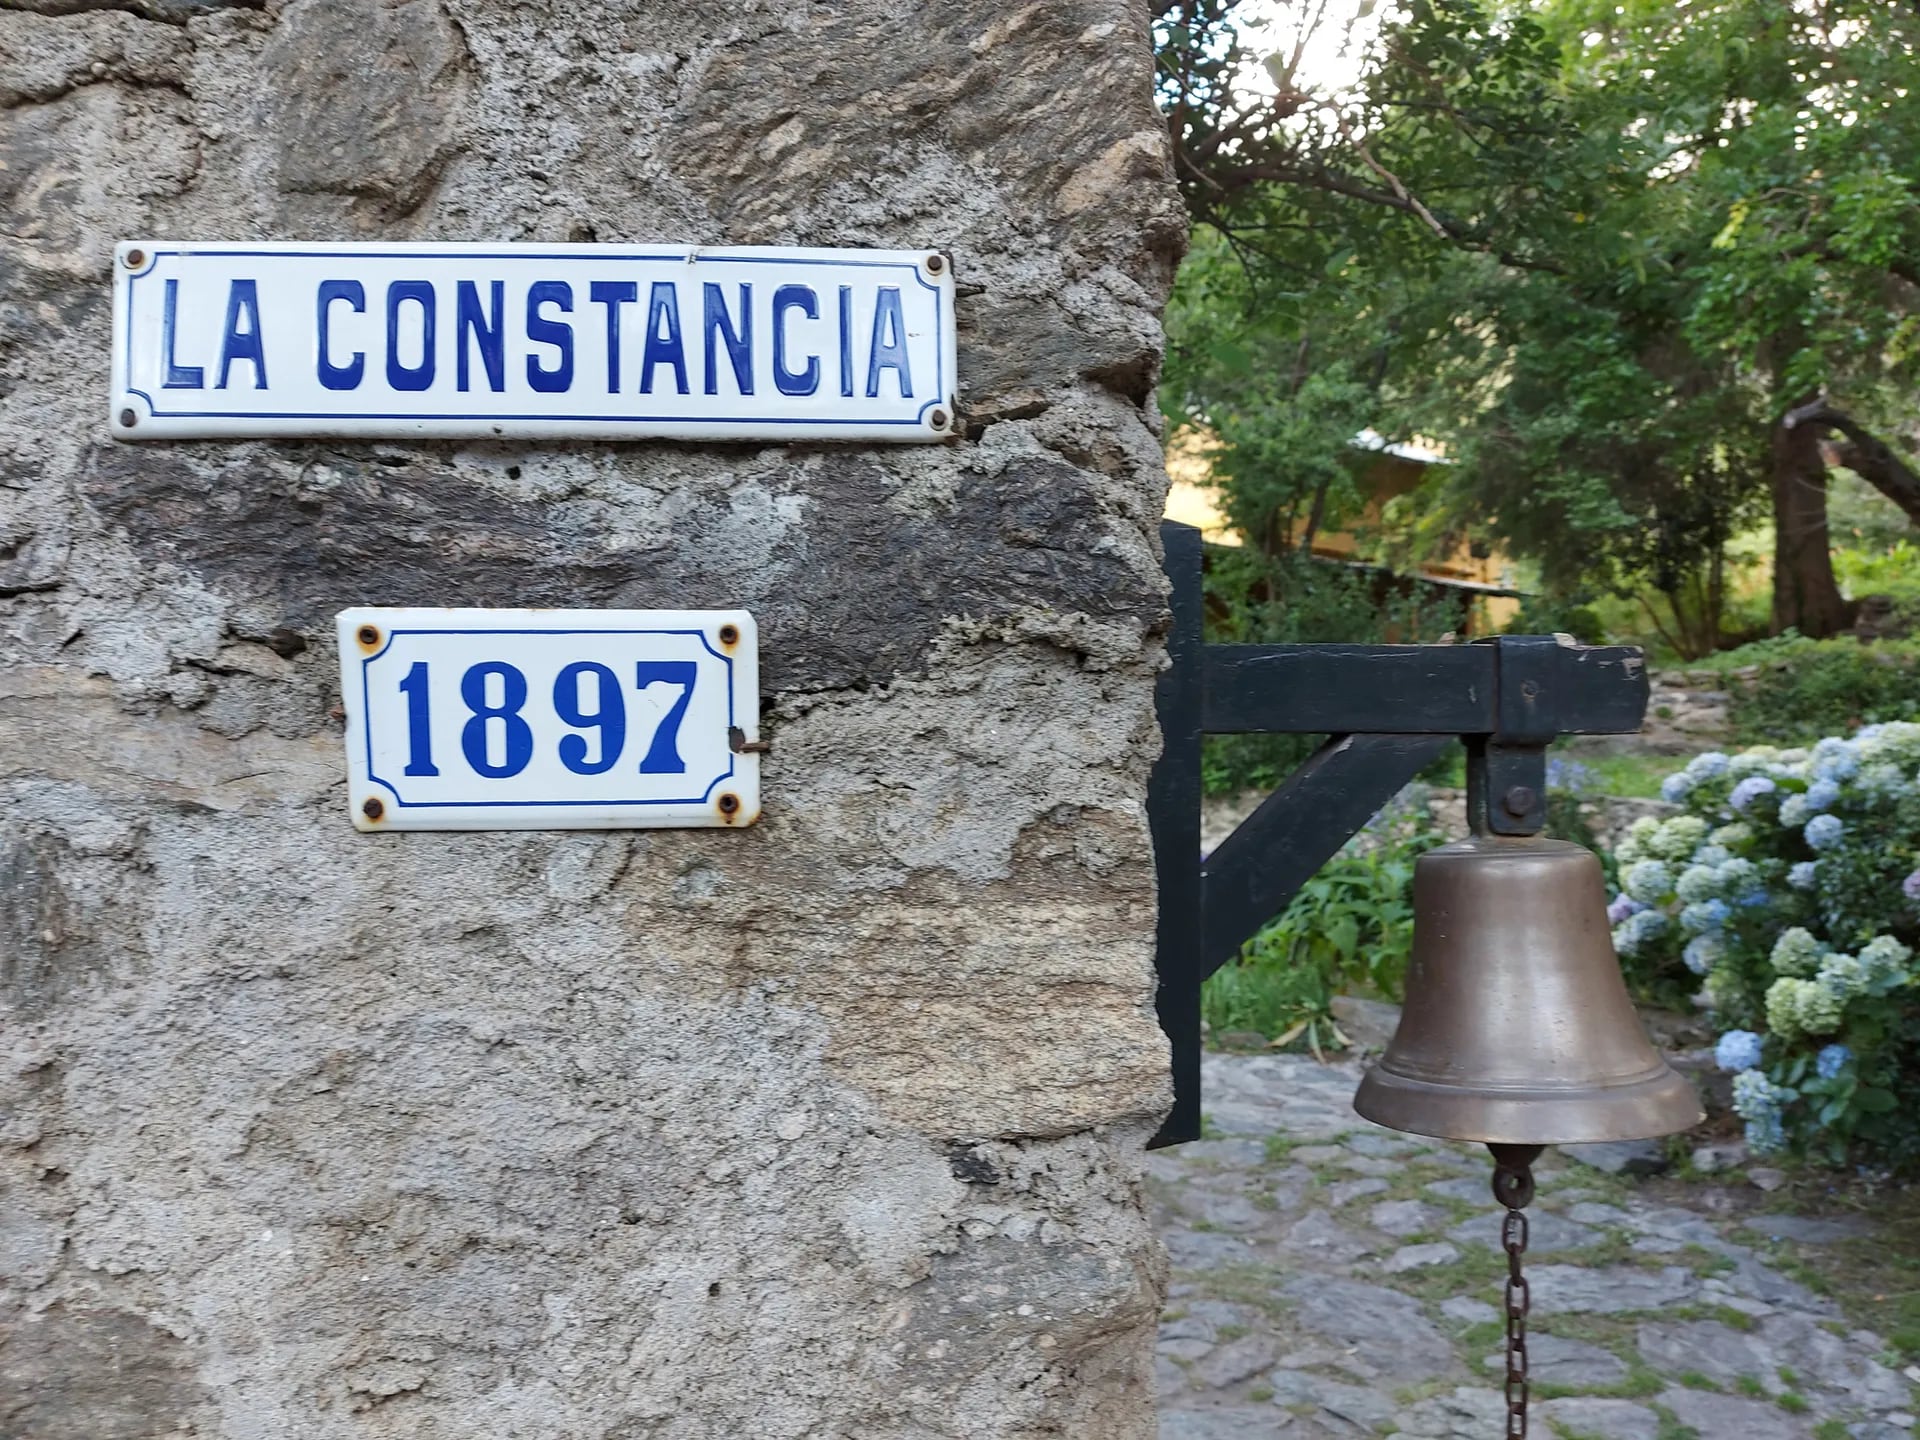 La Constancia, en San Javier, fue fundada en 1897